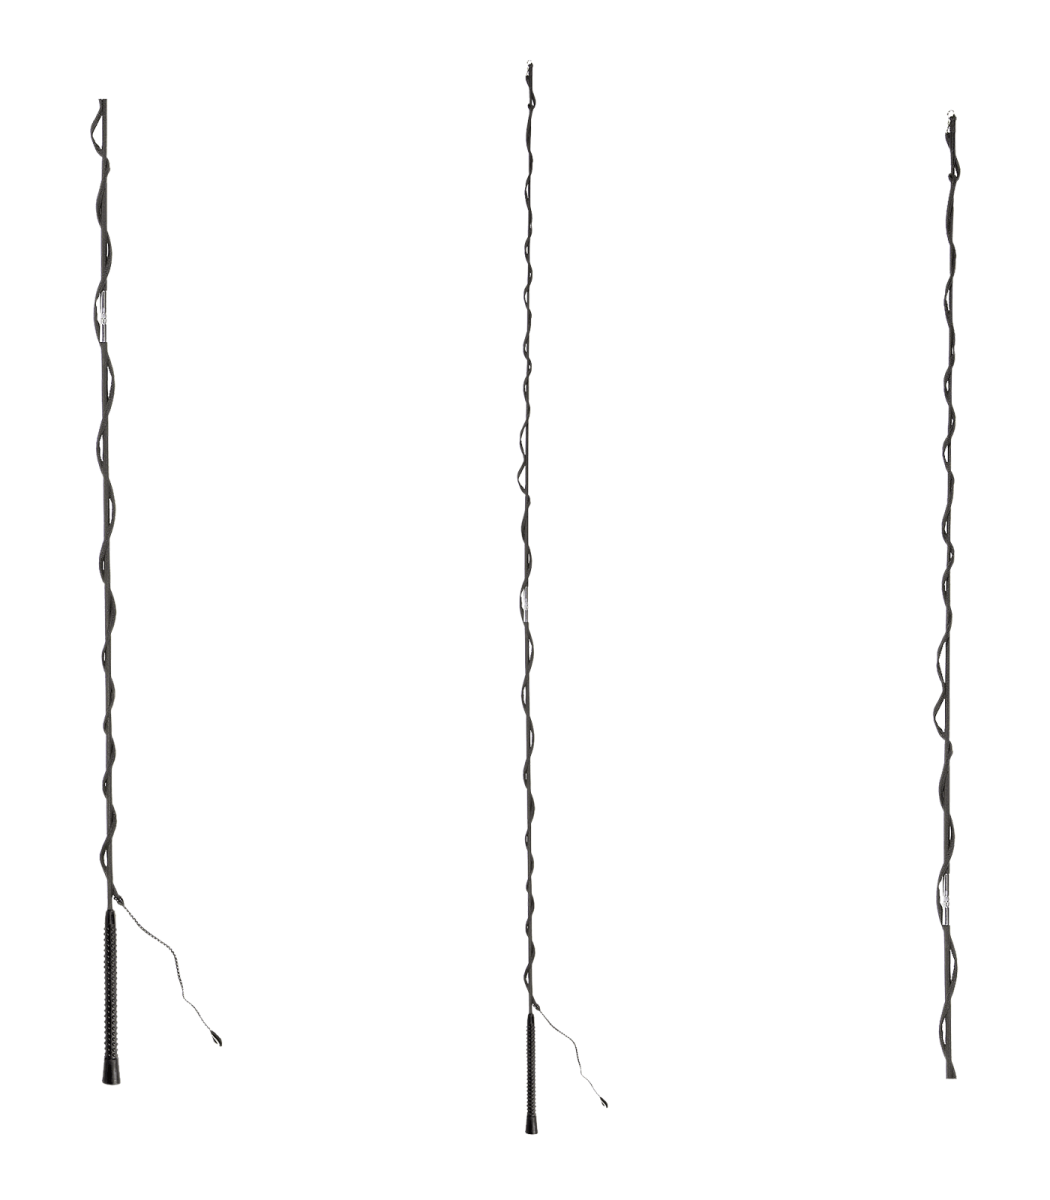 Longierpeitsche zerlegbar 200 cm lang schwarz Waldhausen 